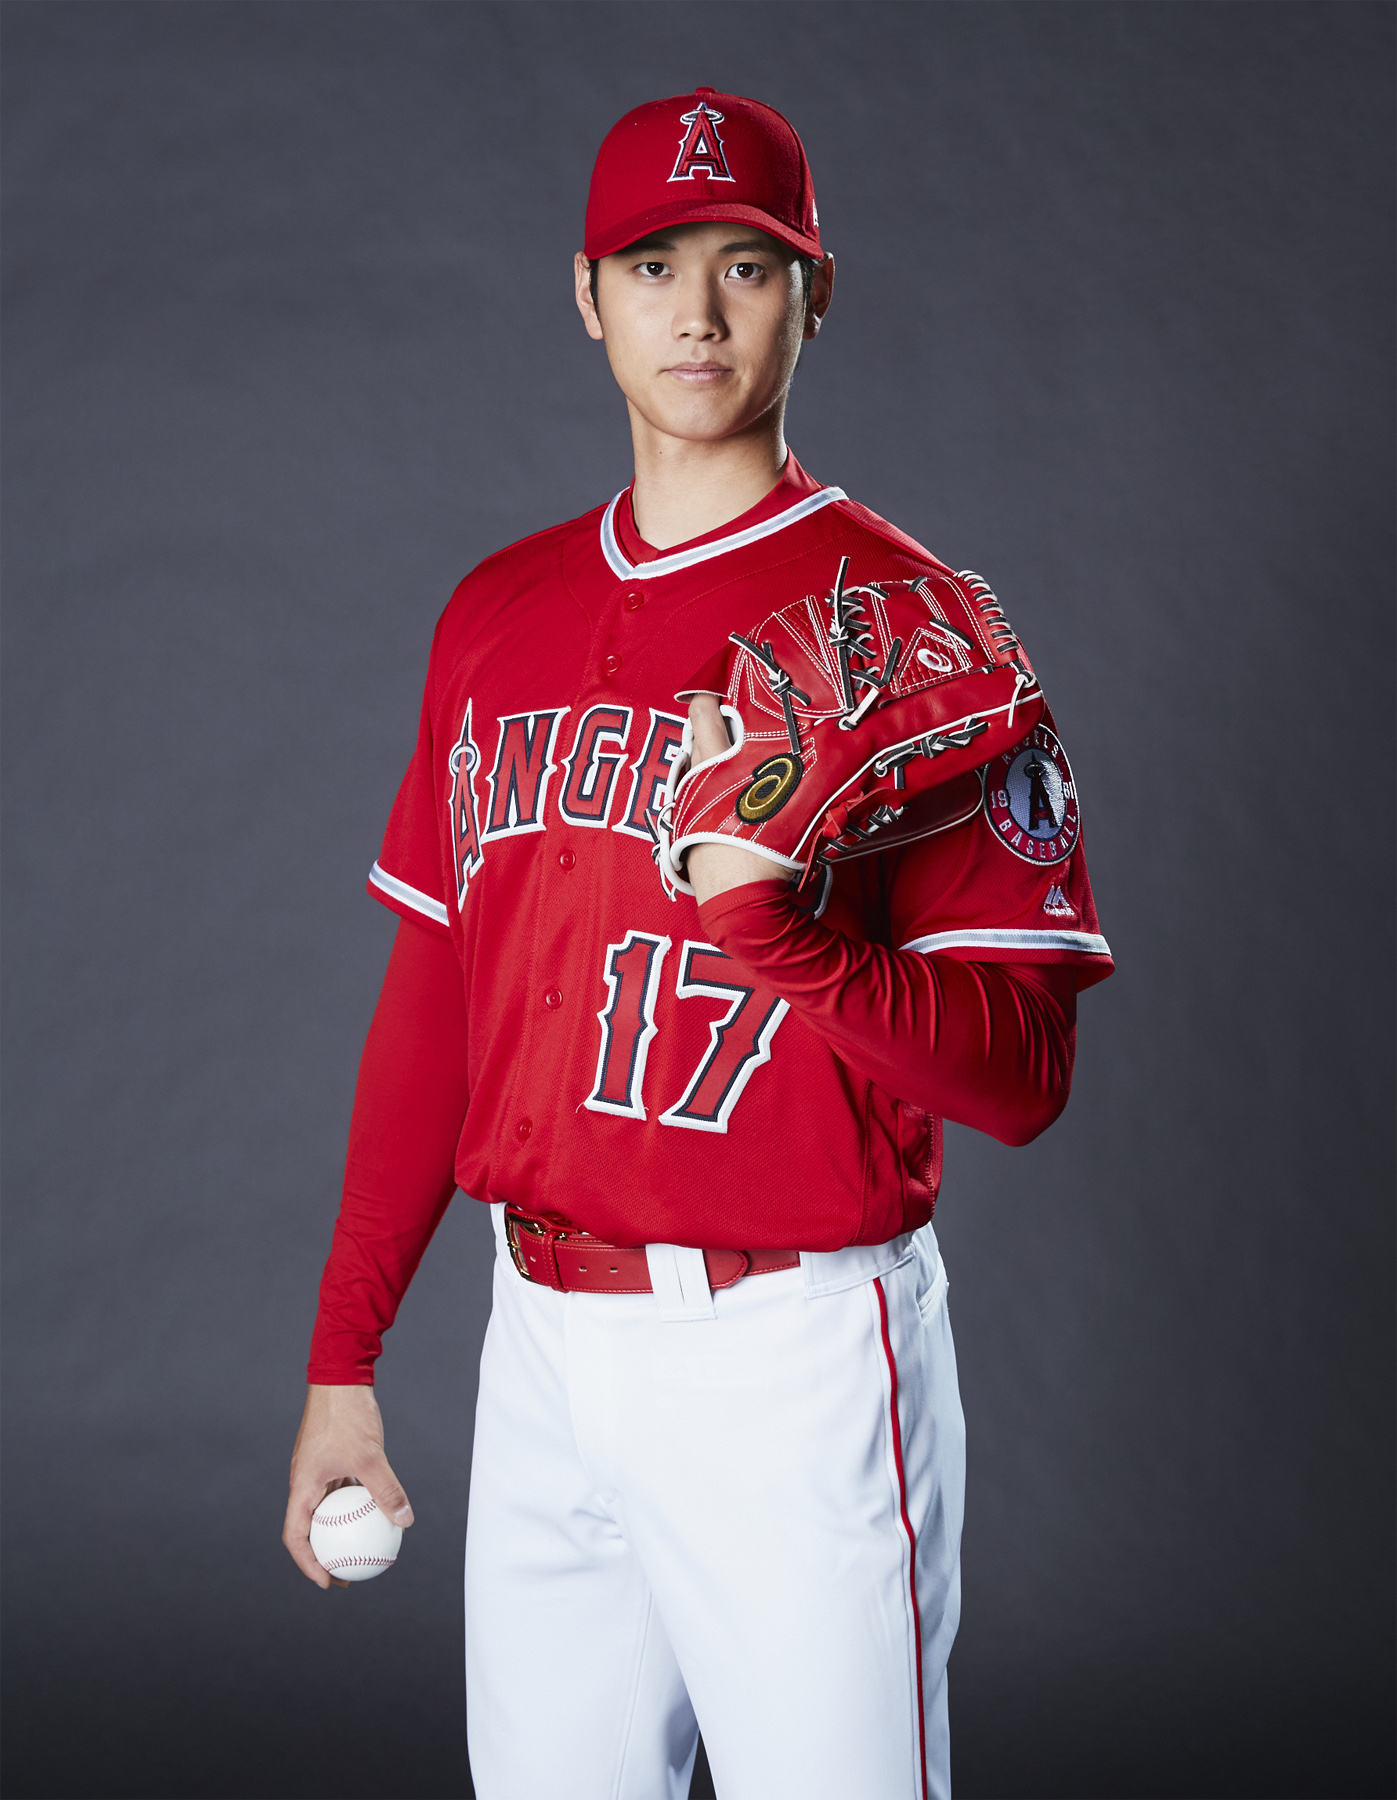 6セット-大谷翔平 コルクコースター プロ野球選手 ロサンゼルス 